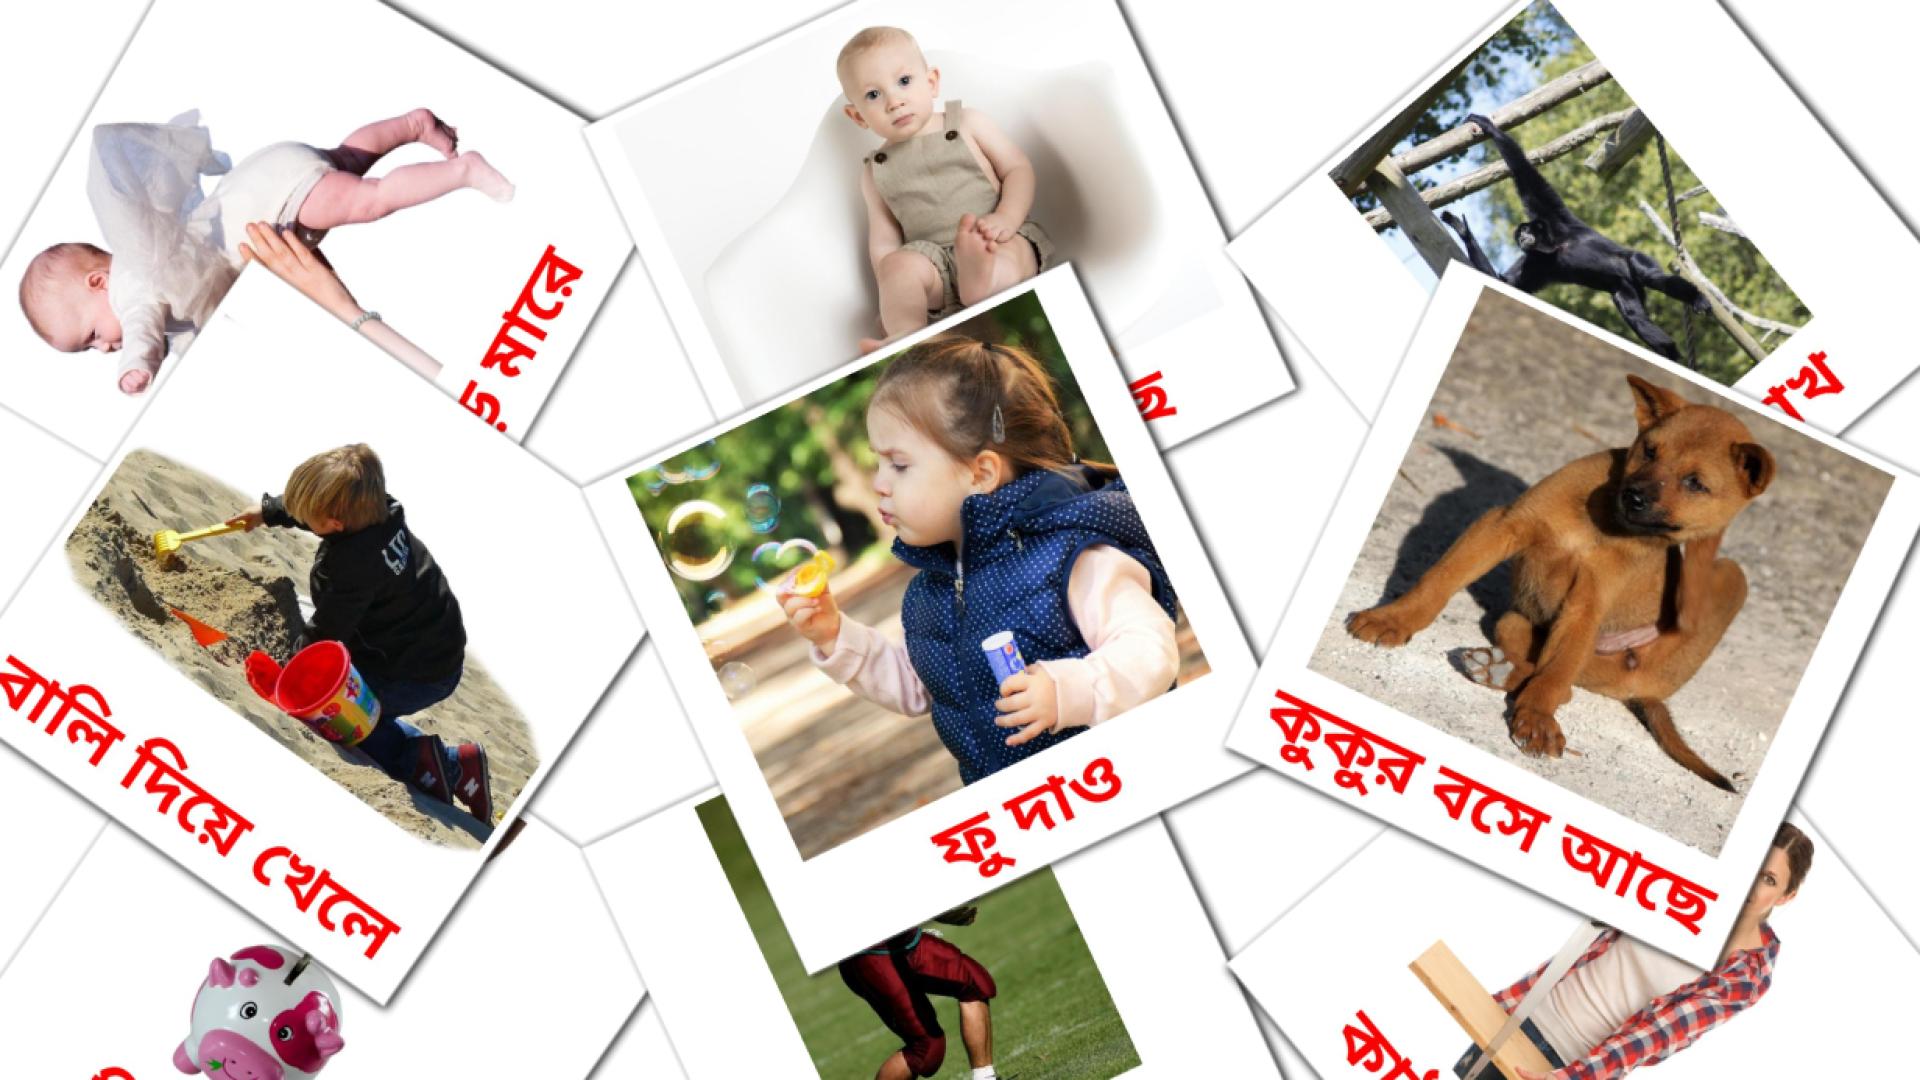 Action verbs - bengali vocabulary cards